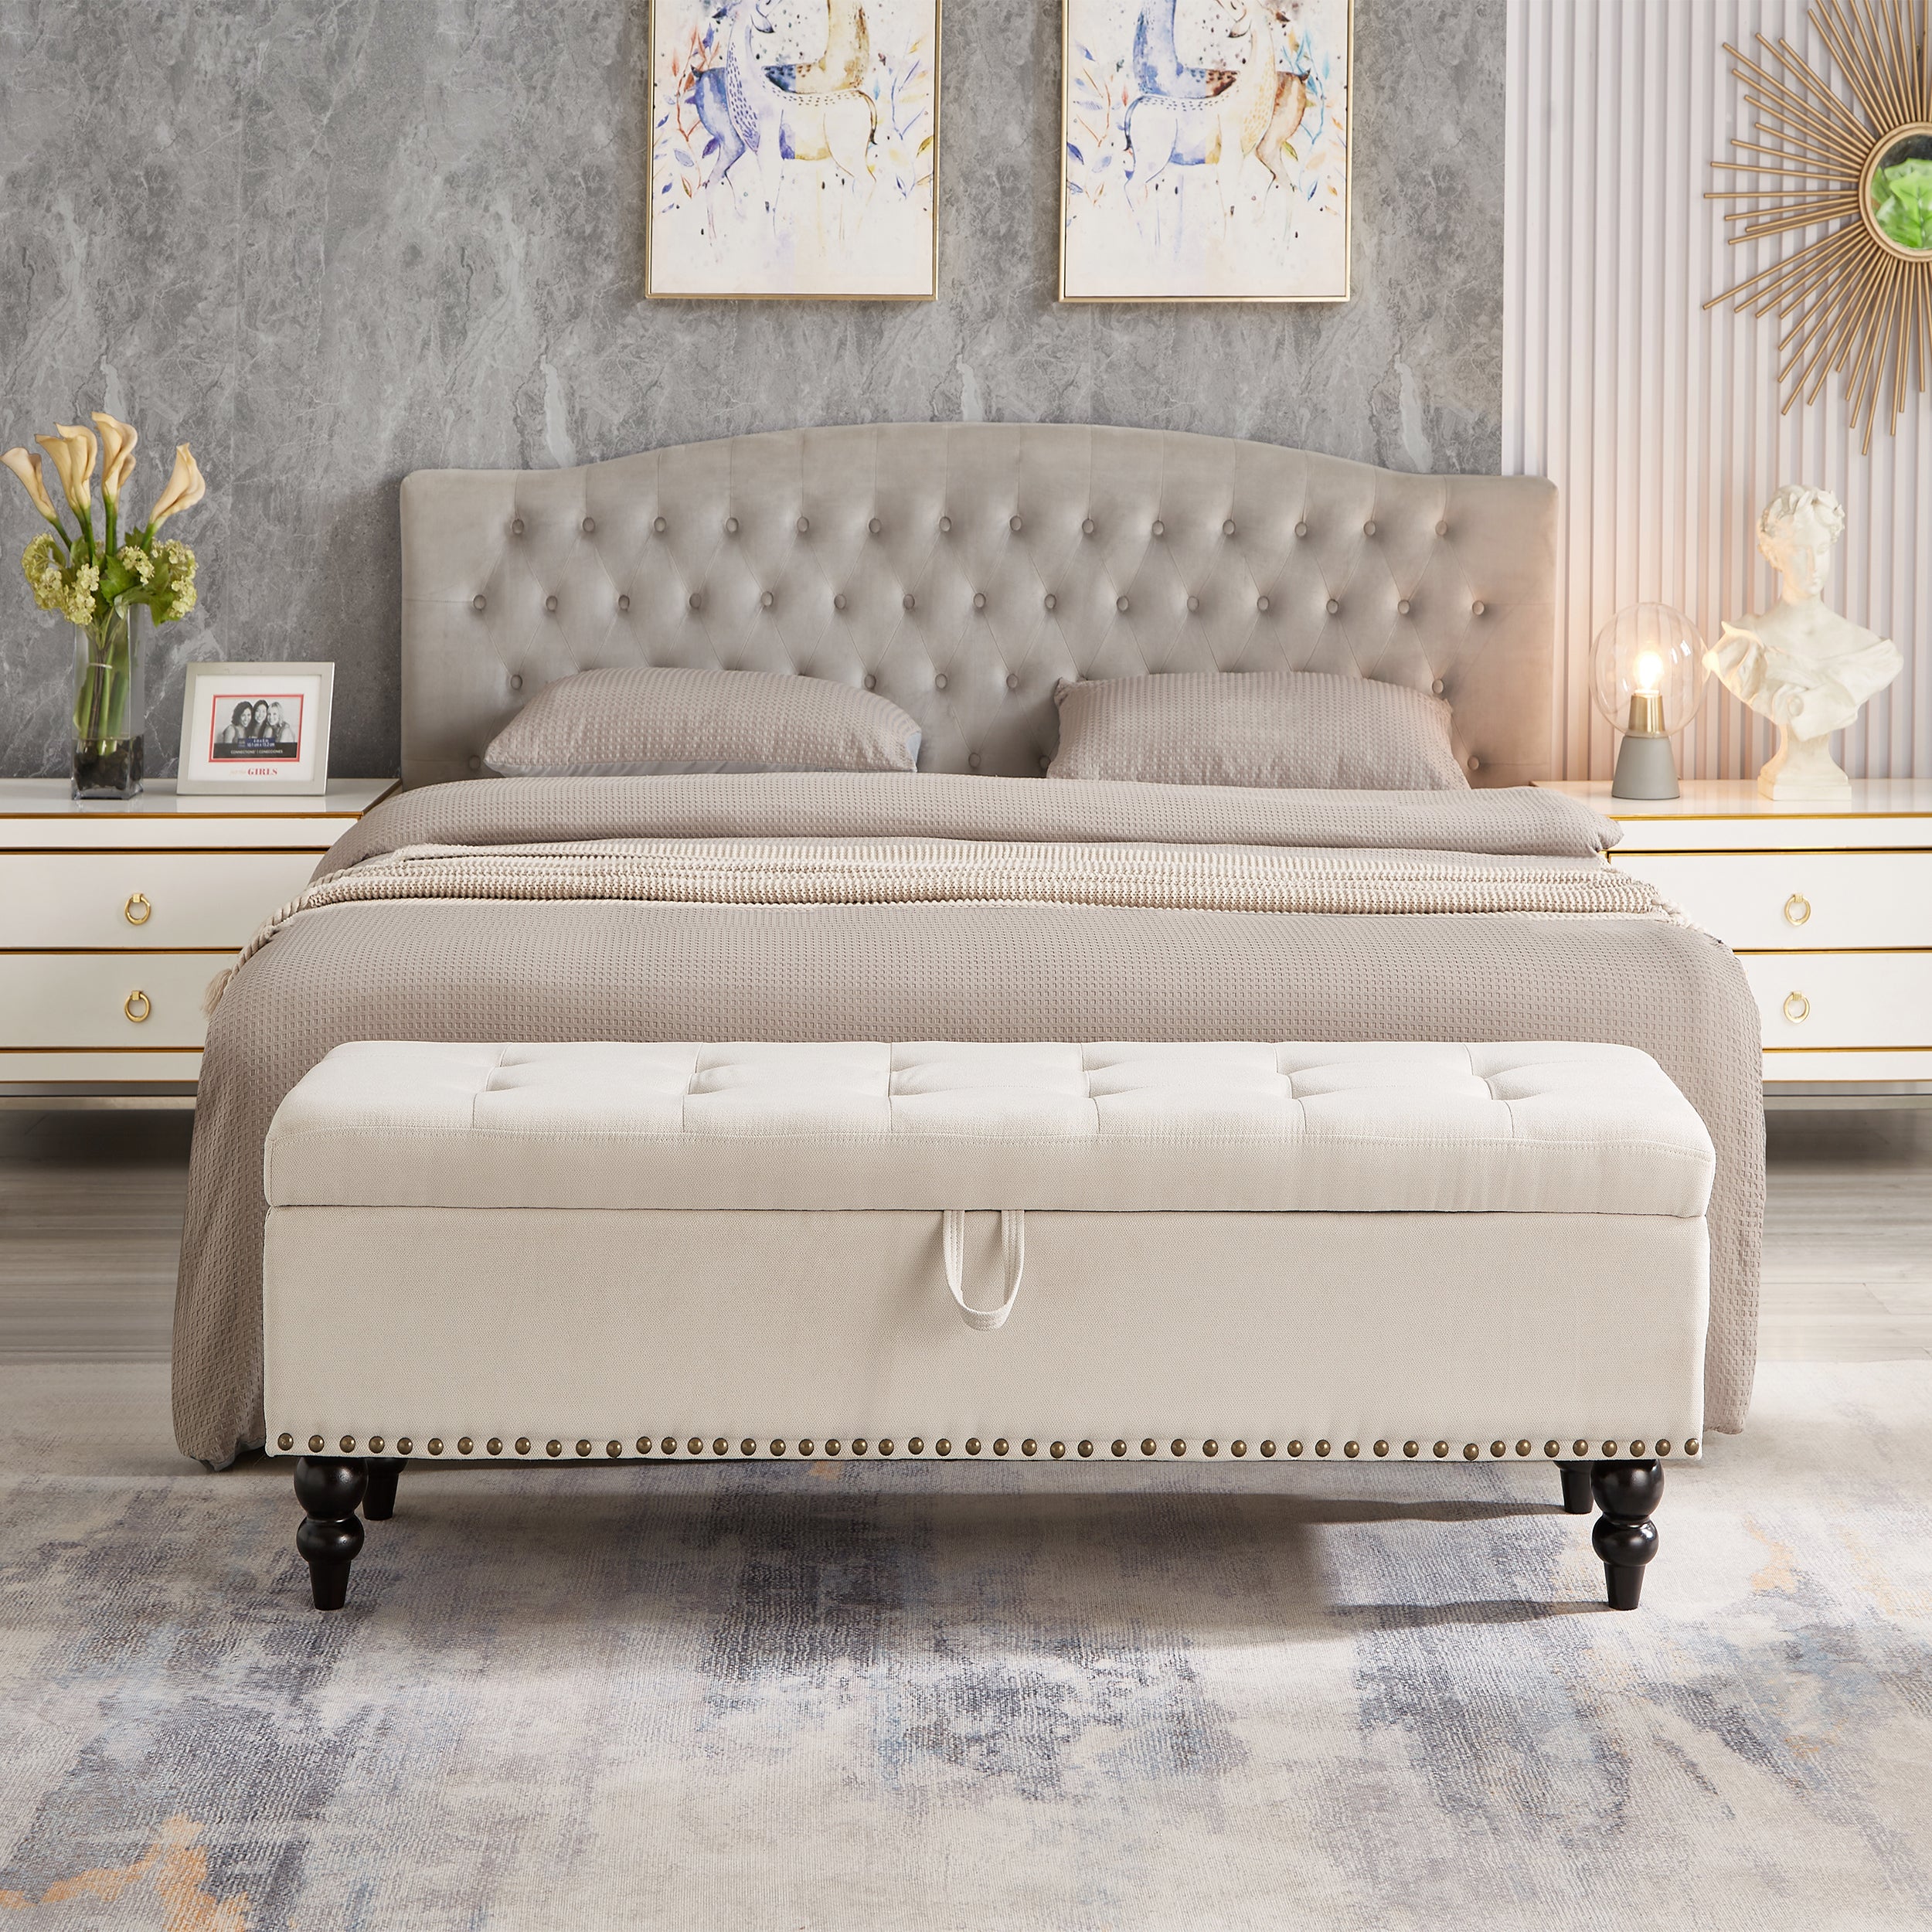 59" Linen Fabric Storage Bench for Entryway, Bedroom, Livingroom